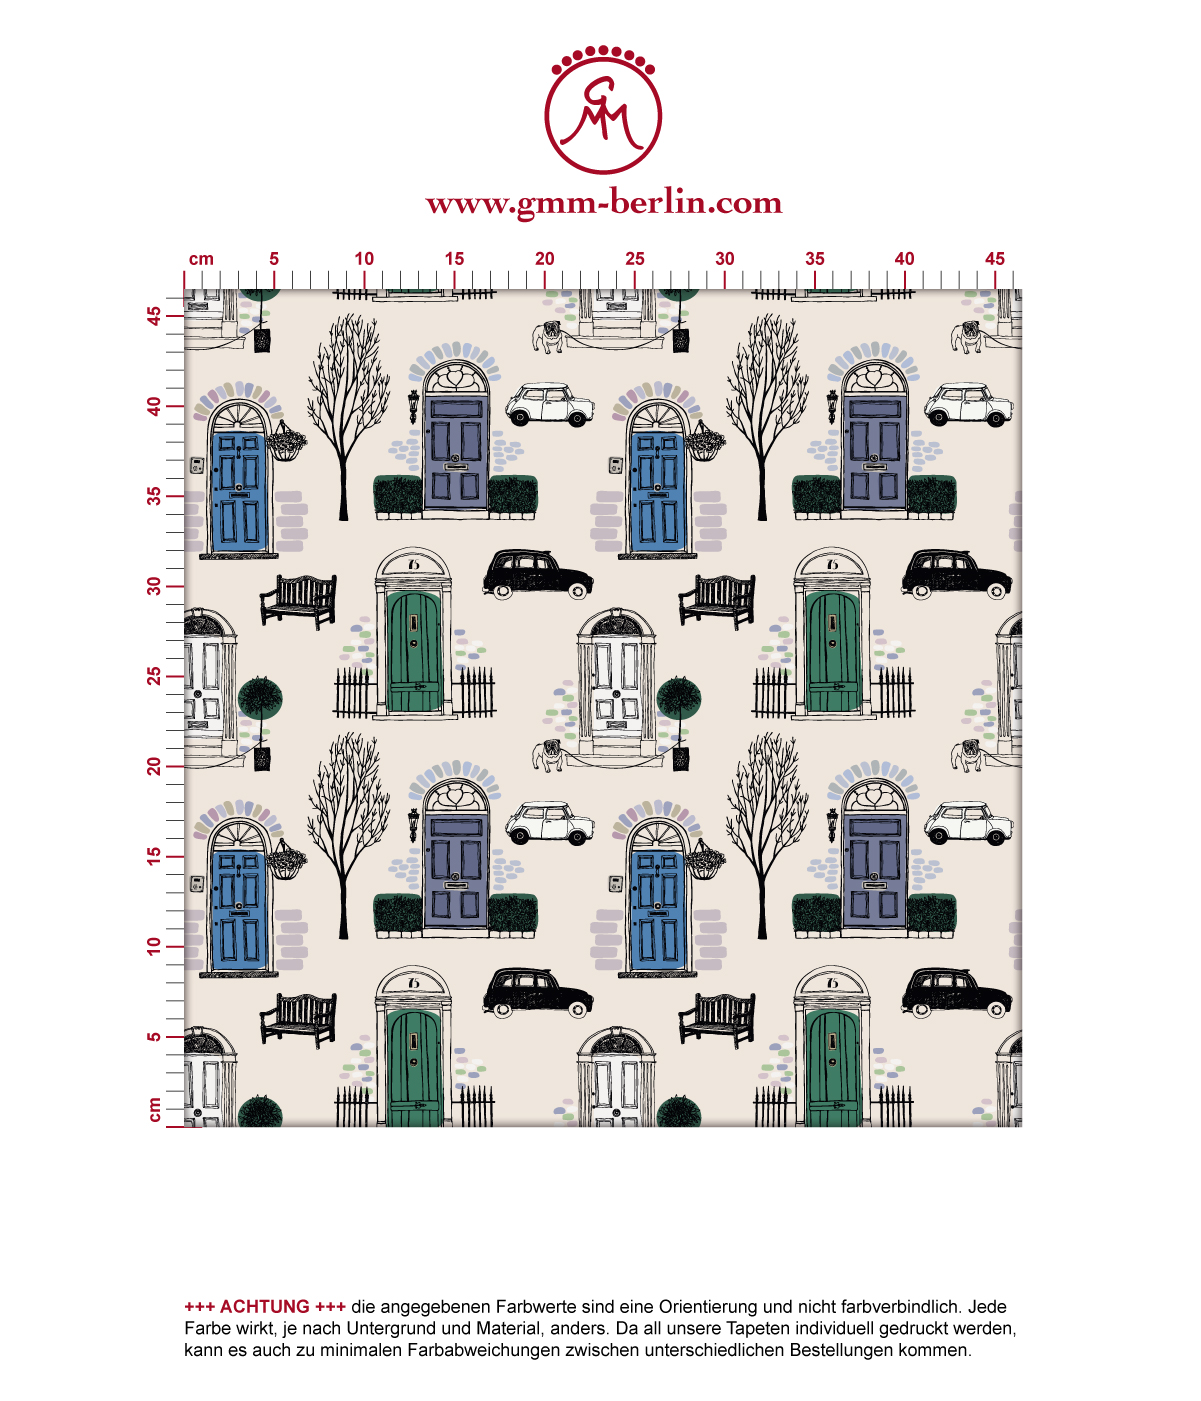 Fröhliche Tapete "Belgravia" mit Londoner Türen, Mini und Cabs in blau angepasst an Little Greene Wandfarben. Aus dem GMM-BERLIN.com Sortiment: Schöne Tapeten in creme Farbe